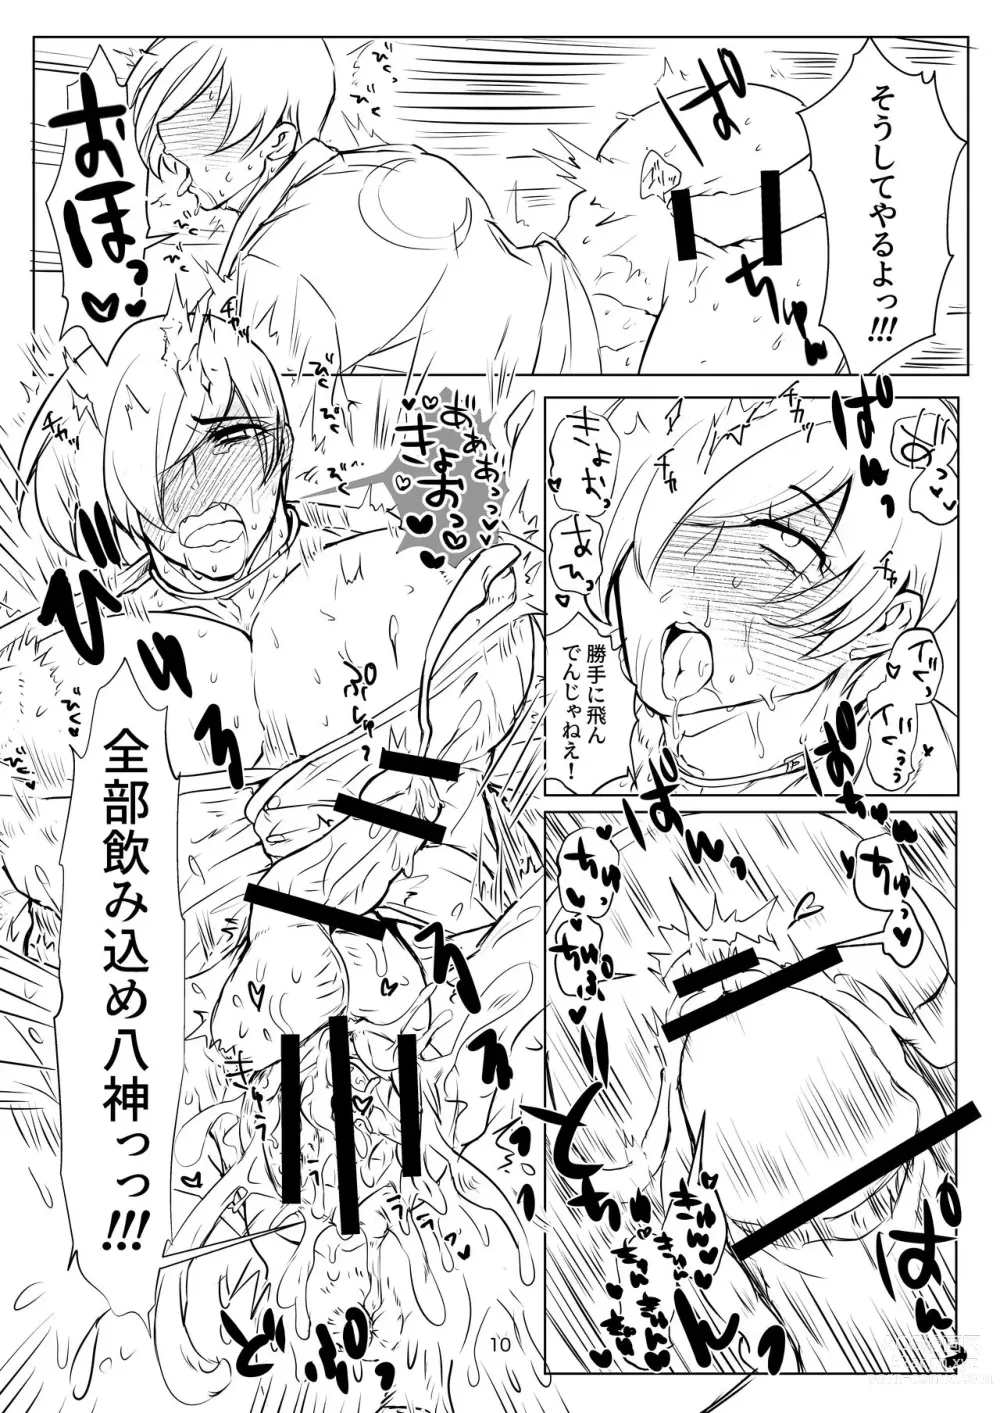 Page 10 of doujinshi R18 Manga EAT ME!